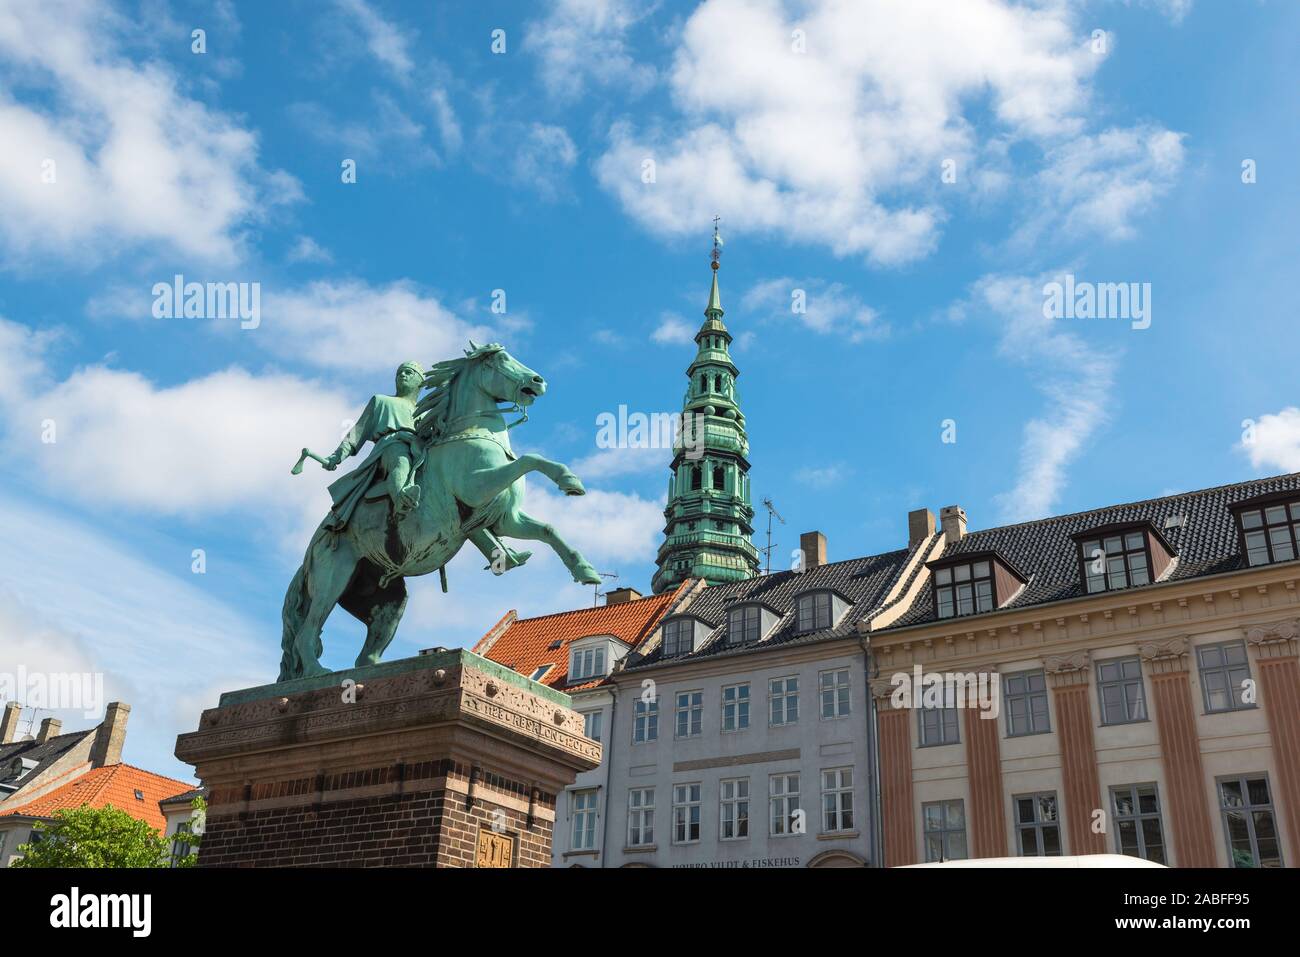 Danemark Copenhague, vue de la statue équestre de l'évêque Absalon dans Højbro Plads, une place populaire dans le centre de Copenhague, au Danemark. Banque D'Images